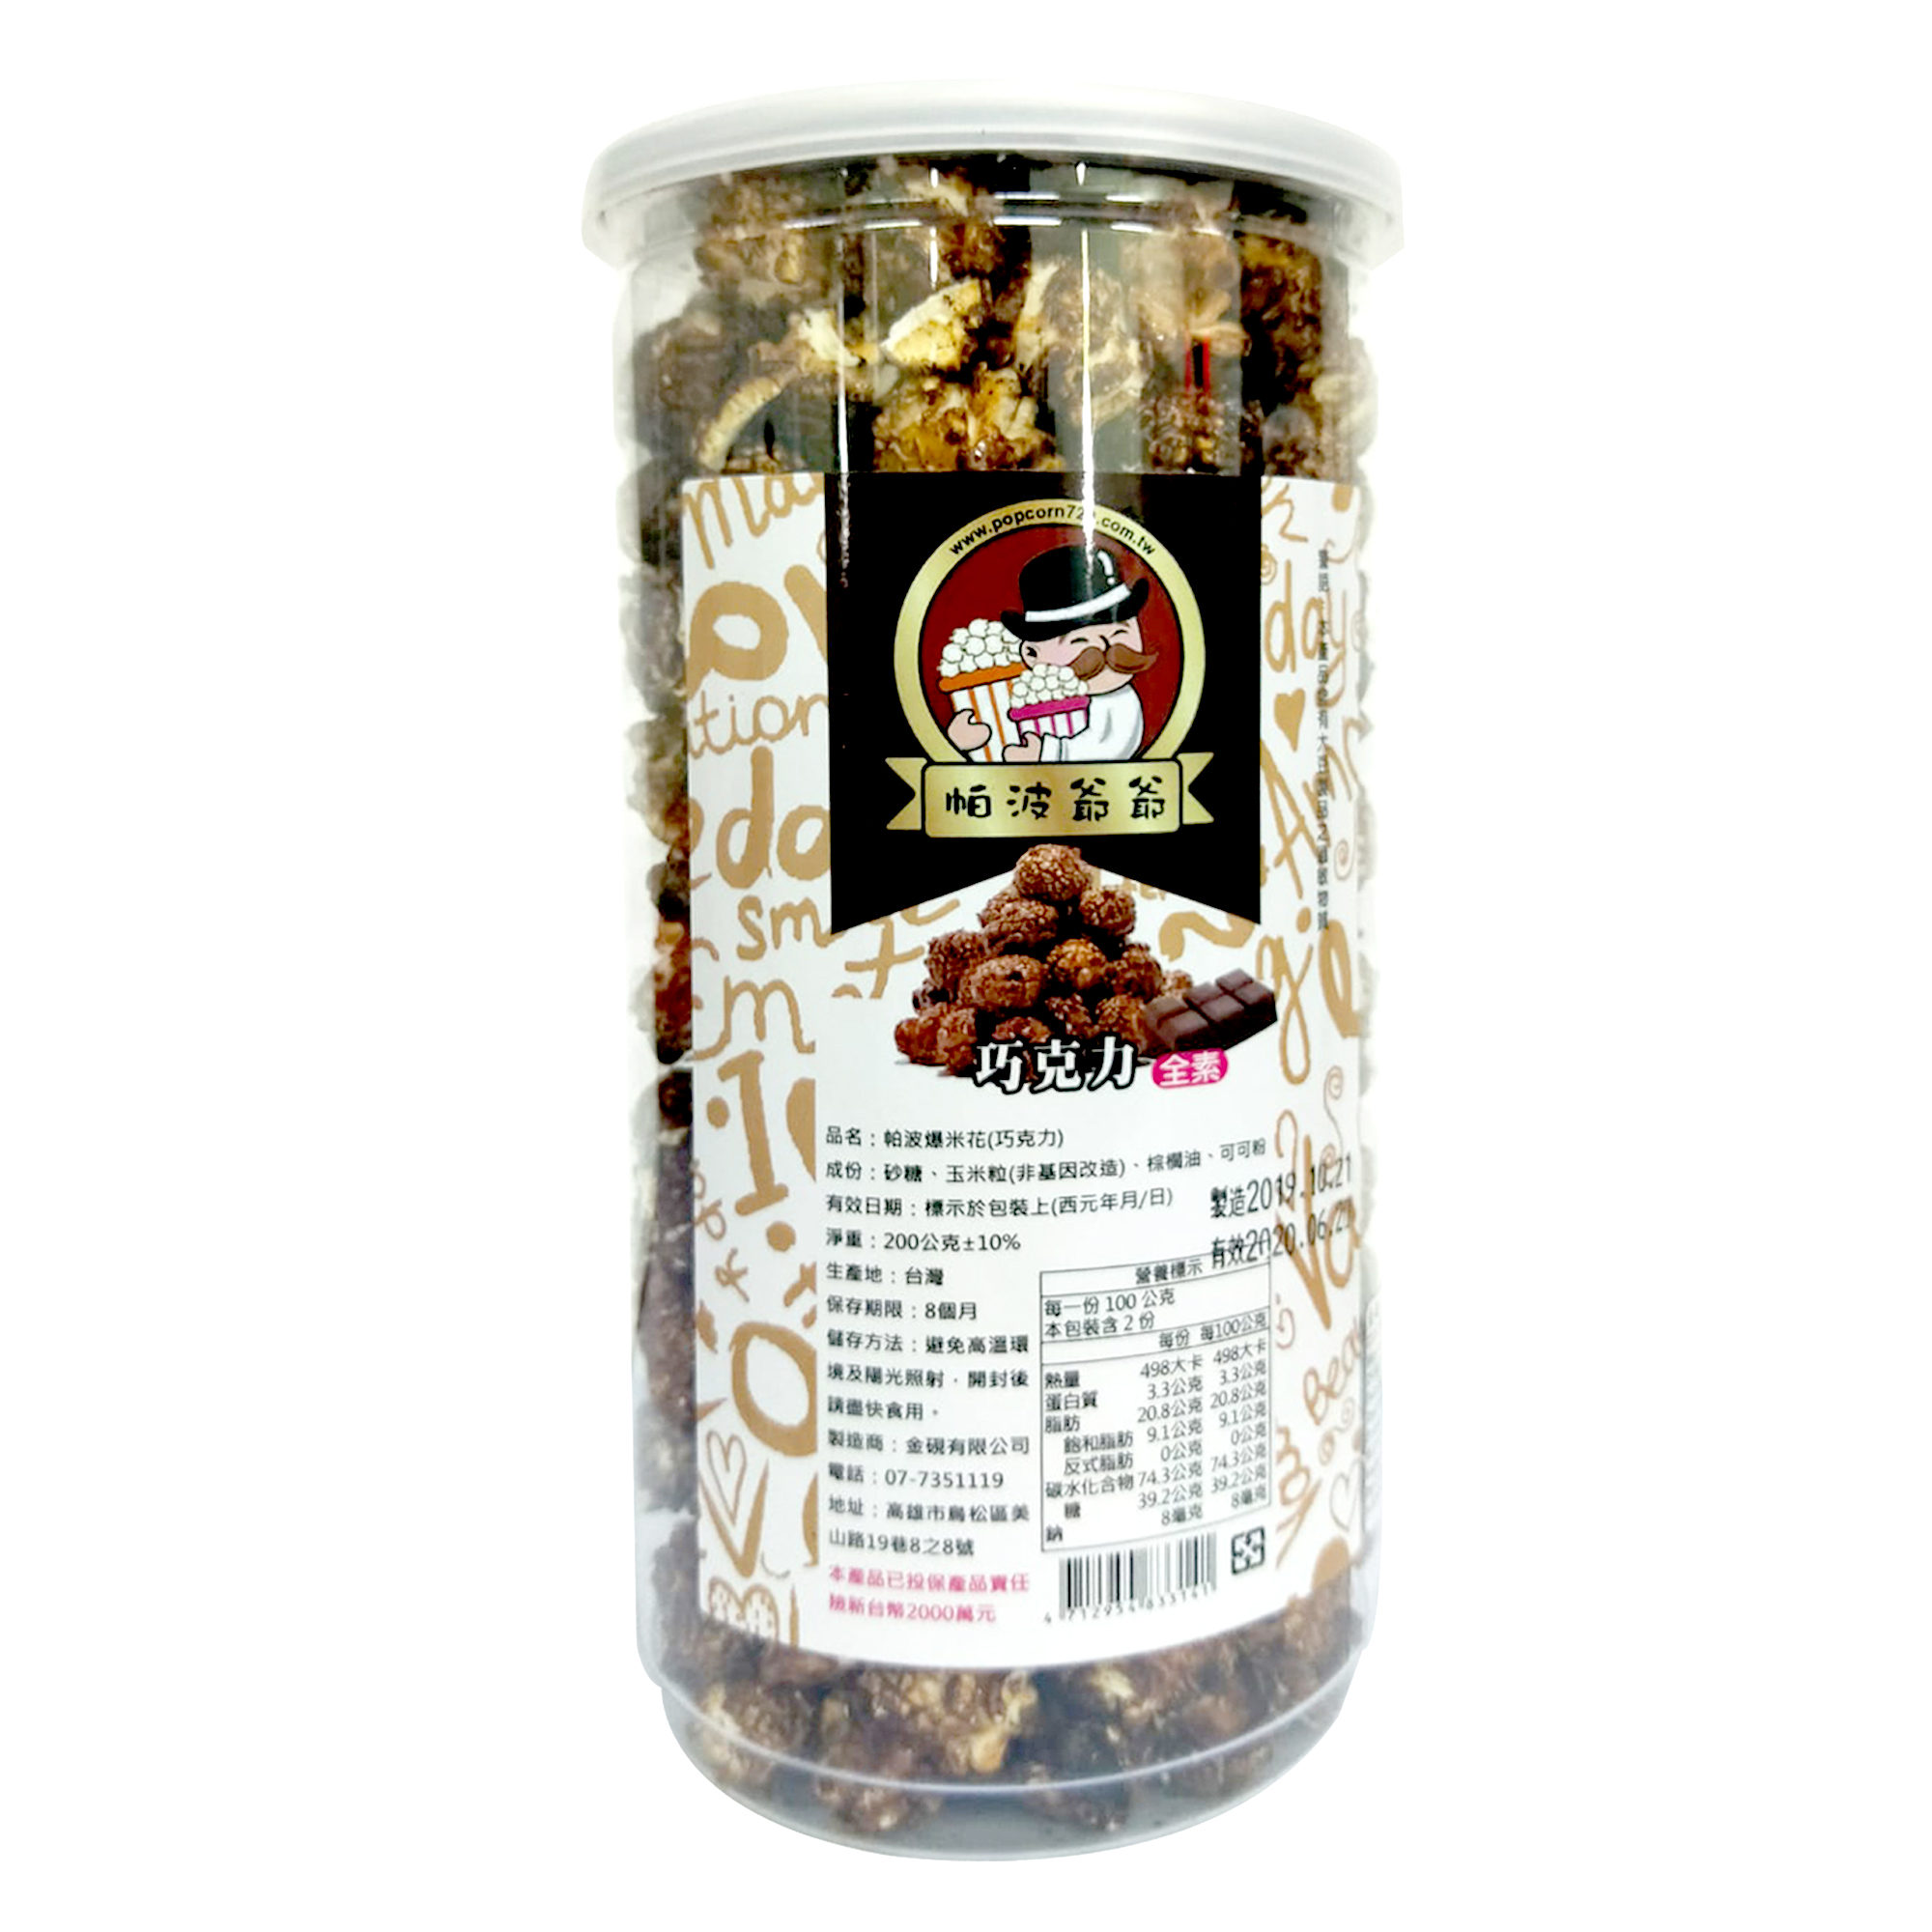 Image Papo Popcorn Chocolate 金砚-巧克力爆米花 200grams